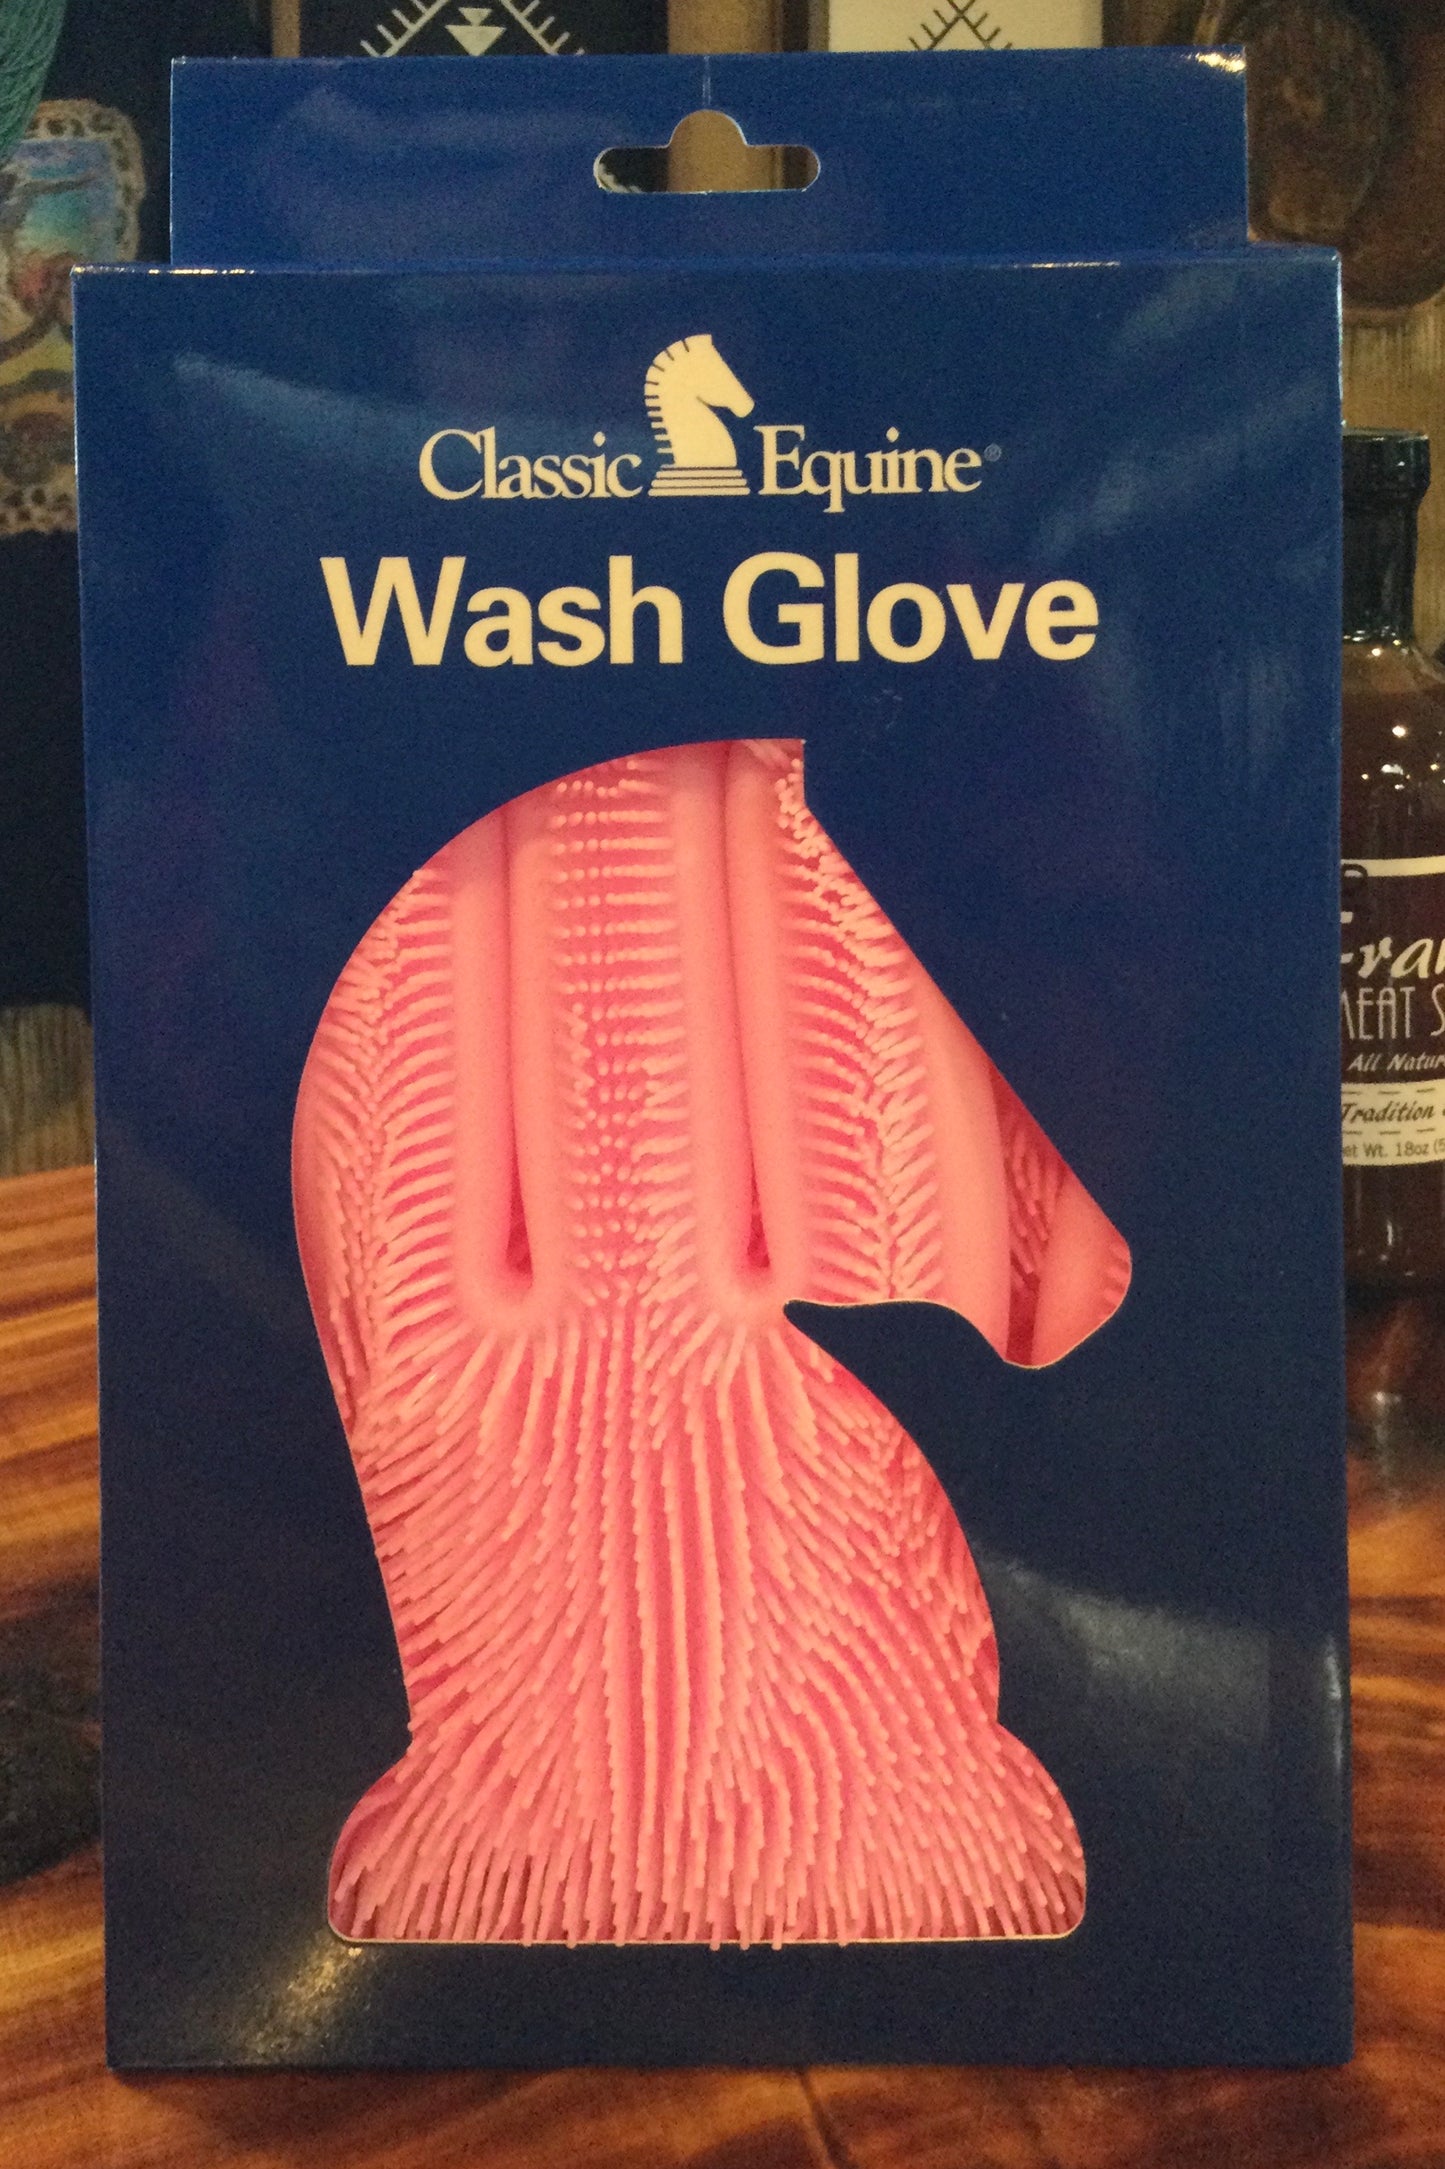 Wash Glove